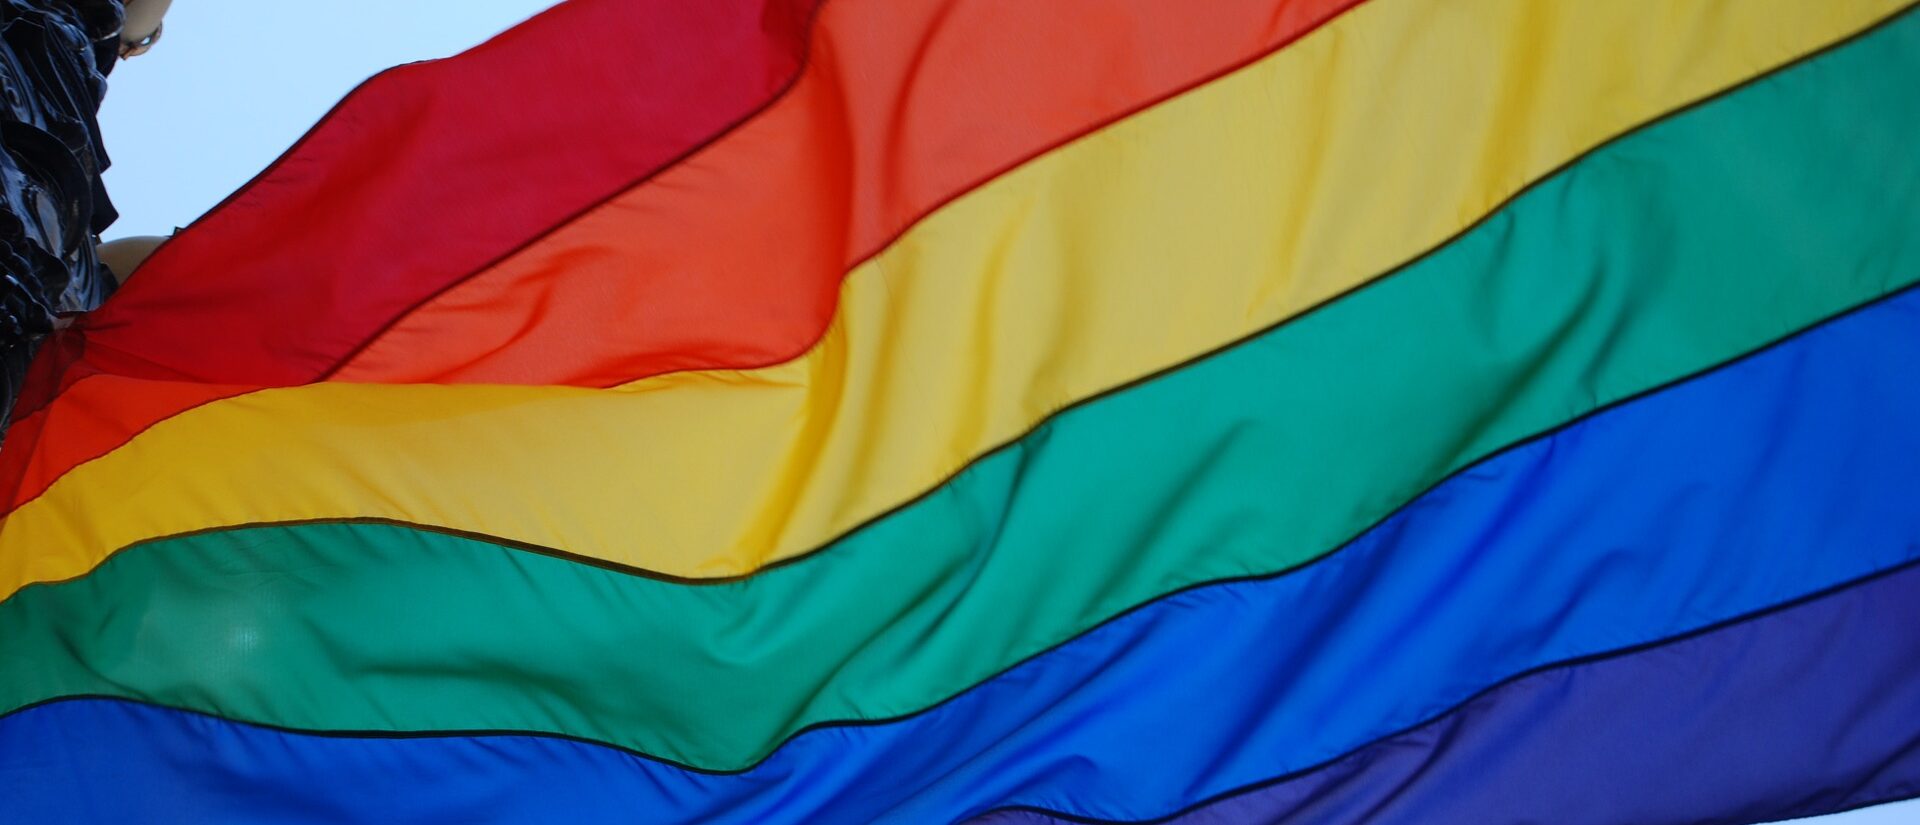 Comment agir contre la discrimination des LGBT? (photo:nancydowd sur Pixabay)